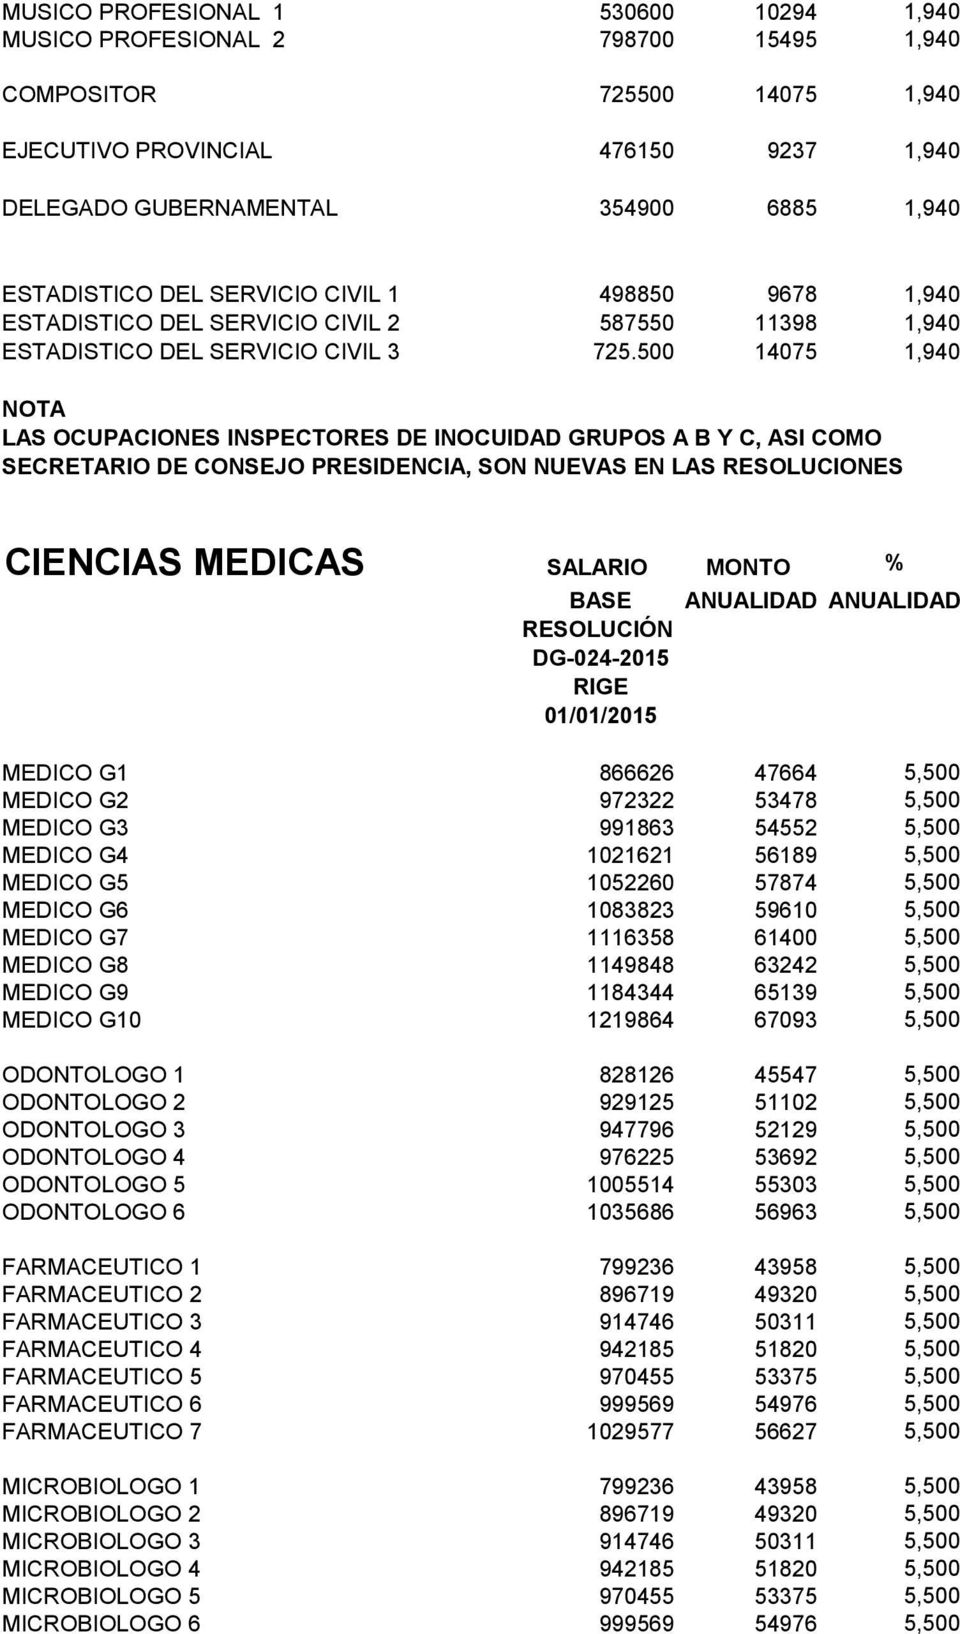 500 14075 1,940 NOTA LAS OCUPACIONES INSPECTORES DE INOCUIDAD GRUPOS A B Y C, ASI COMO SECRETARIO DE CONSEJO PRESIDENCIA, SON NUEVAS EN LAS RESOLUCIONES CIENCIAS MEDICAS SALARIO MONTO % DG-024-2015